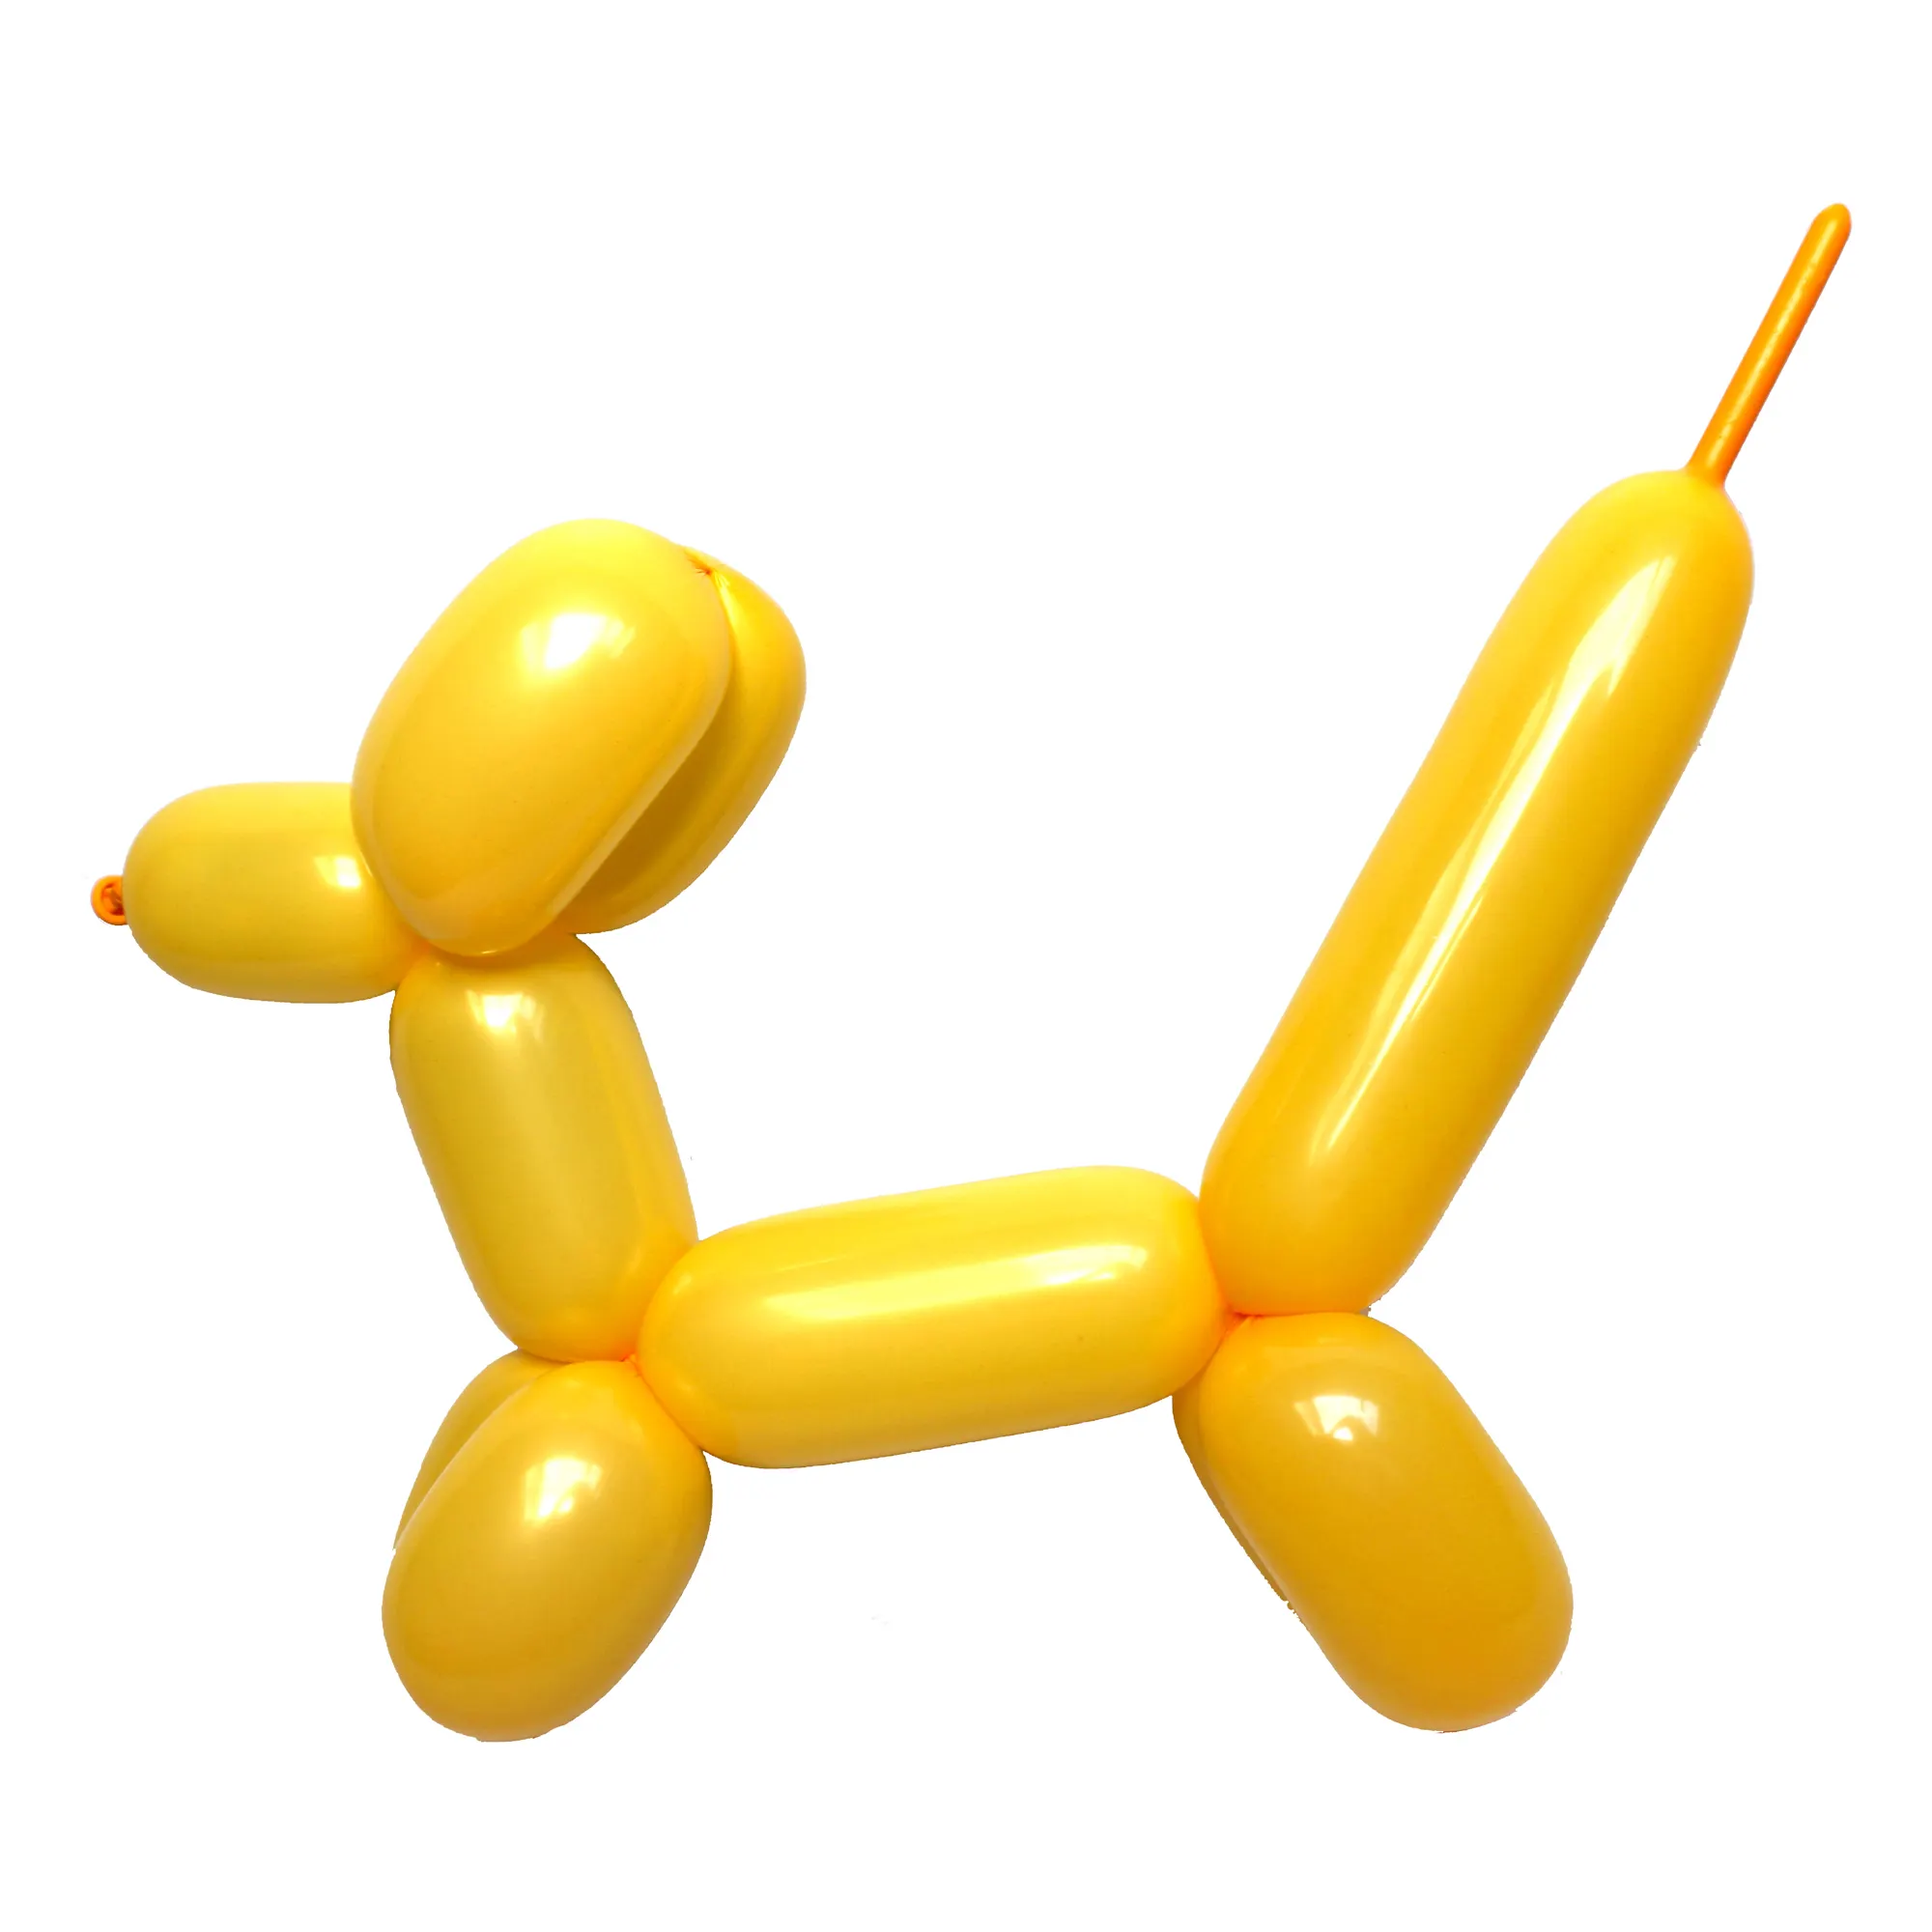 # CHAILERT воздушный шар # лучшее качество goldrod Цвет 260 волшебный шар, поворот животного, который вы хотите